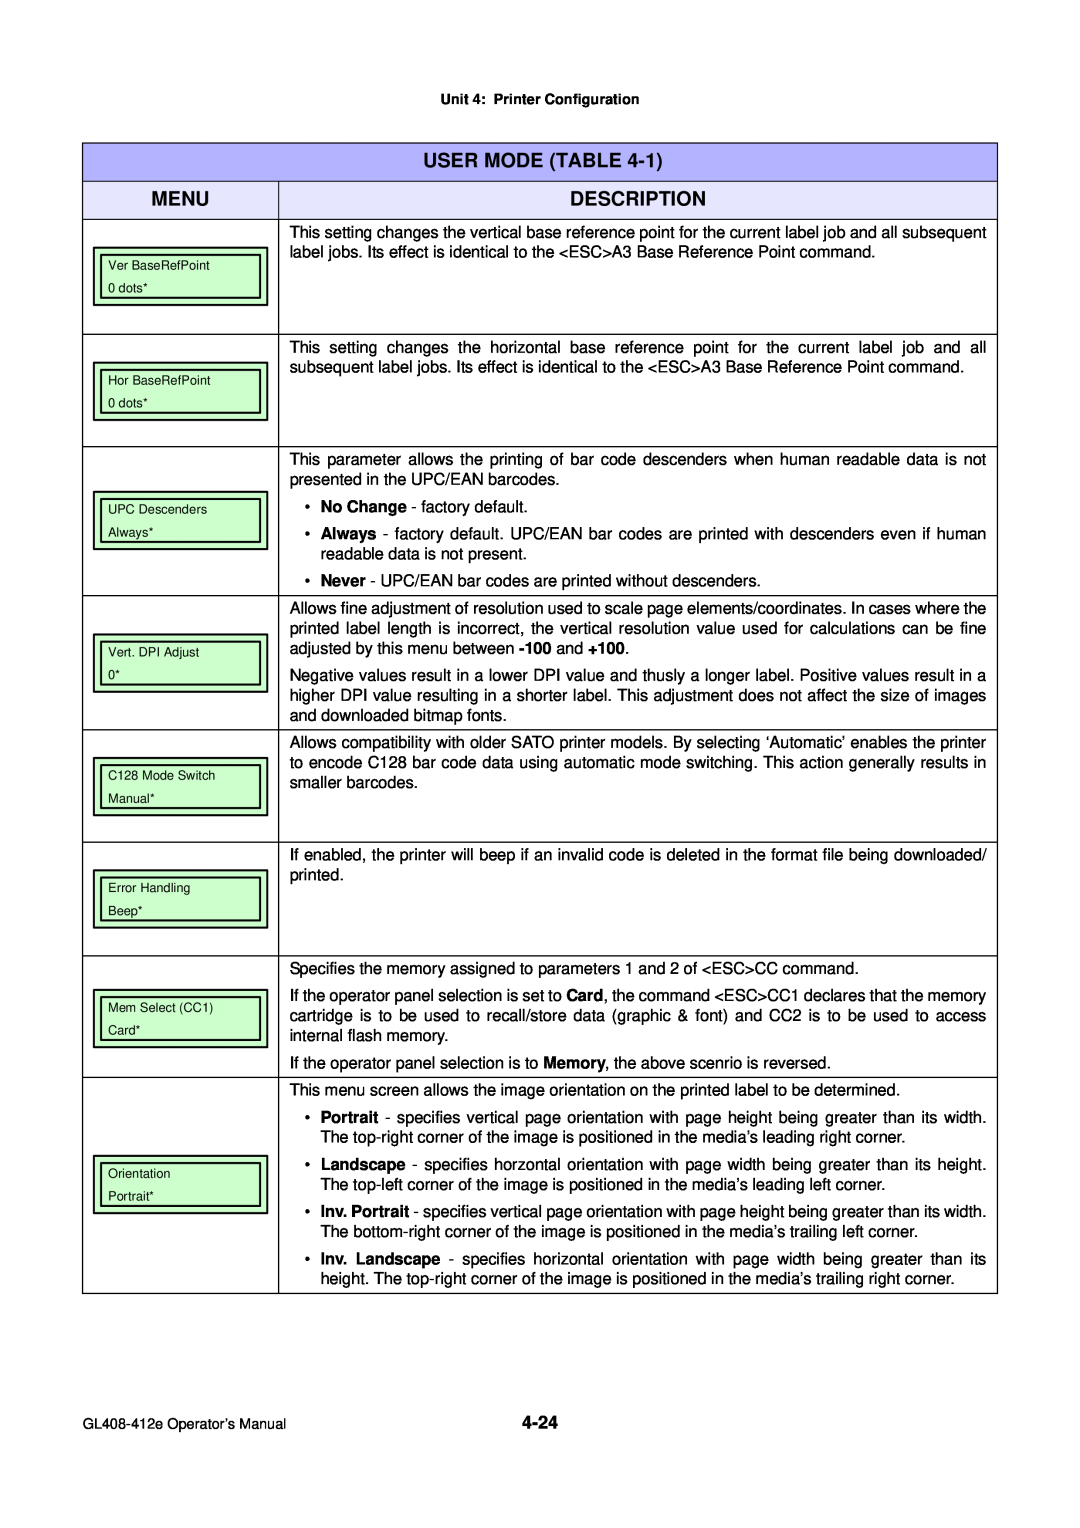 SATO GL4XXE manual User Mode Table, Menu, Description, presented in the UPC/EAN barcodes 